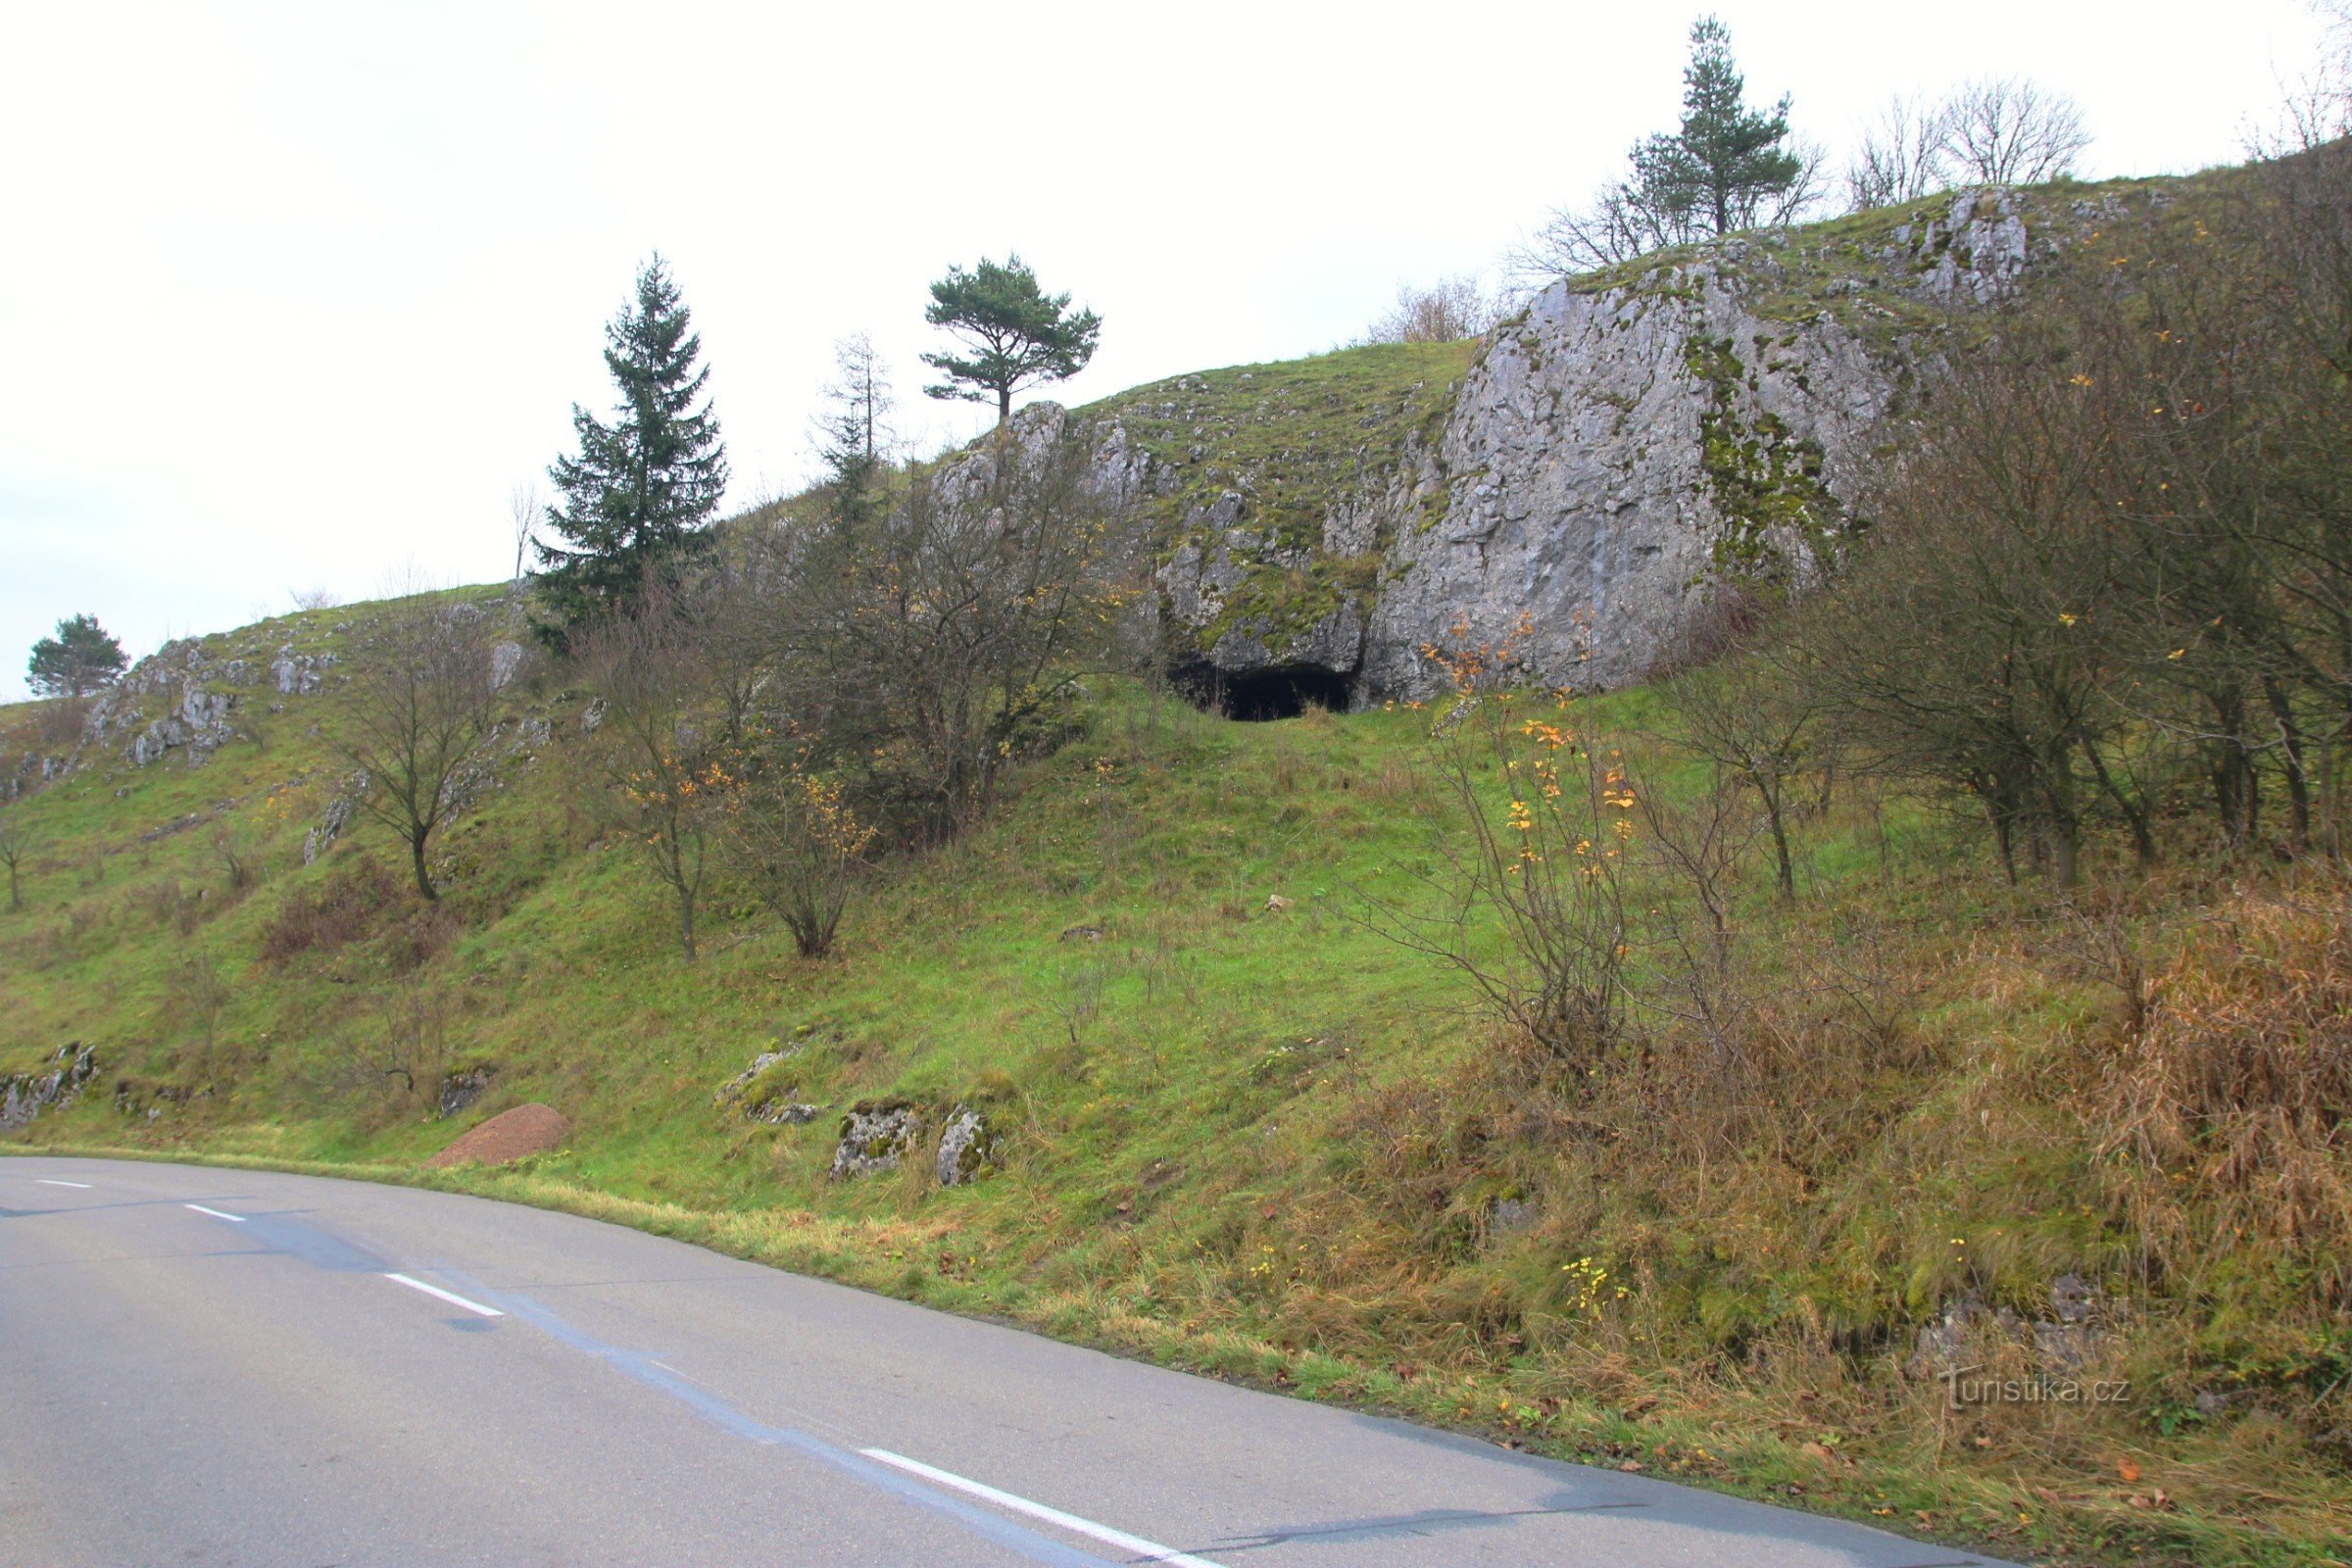 Вхід у печеру добре видно з дороги